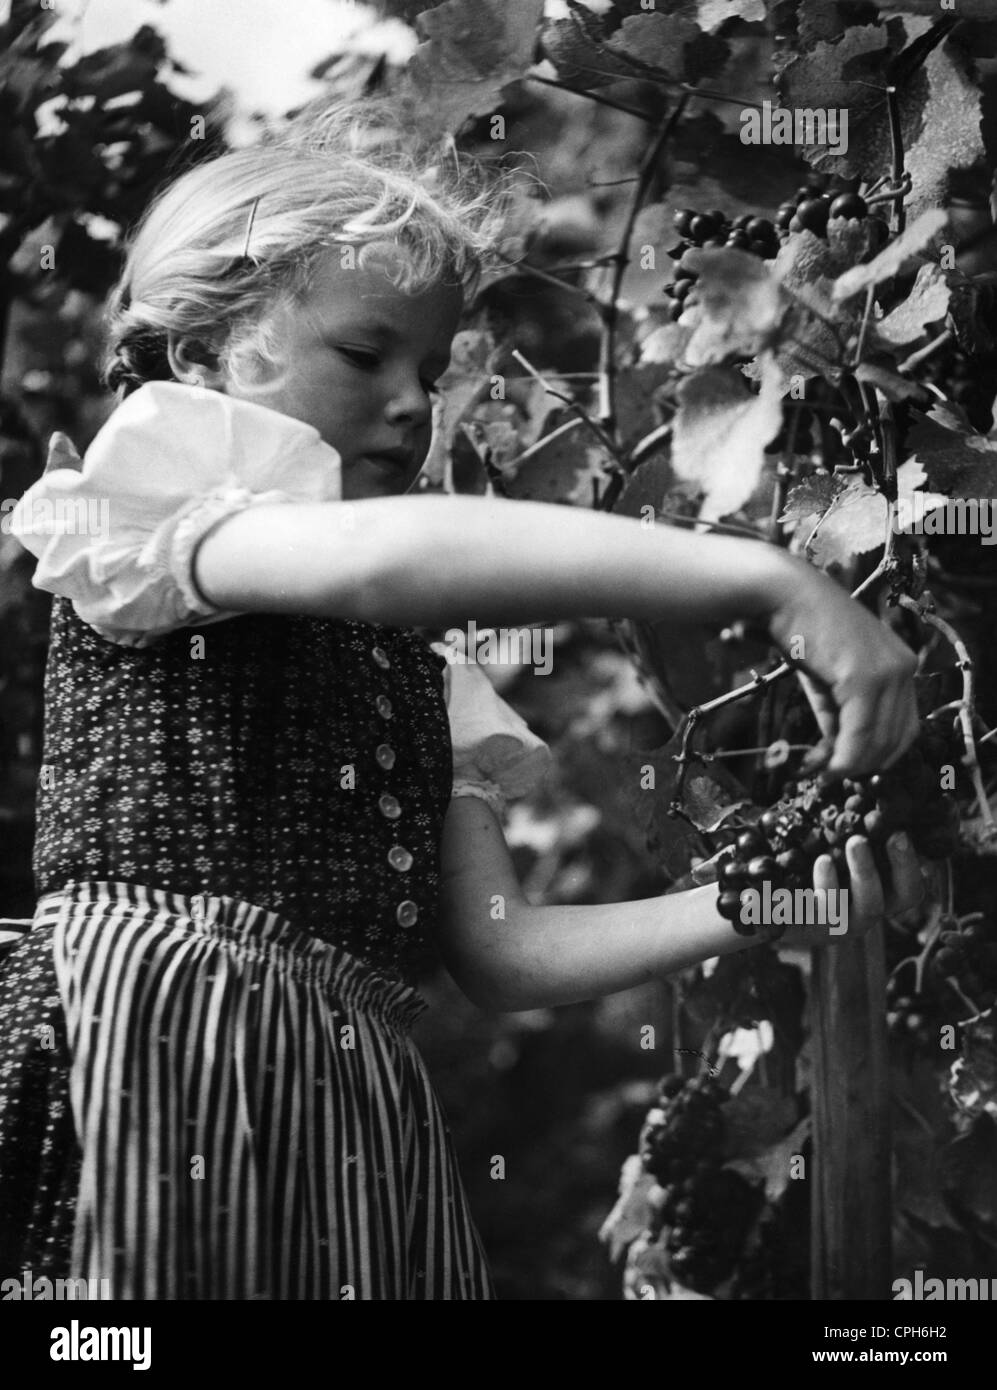 Agricoltura, vino, vendemmia, giovane ragazza durante la vendemmia, Germania, anni 50, diritti aggiuntivi-clearences-non disponibile Foto Stock